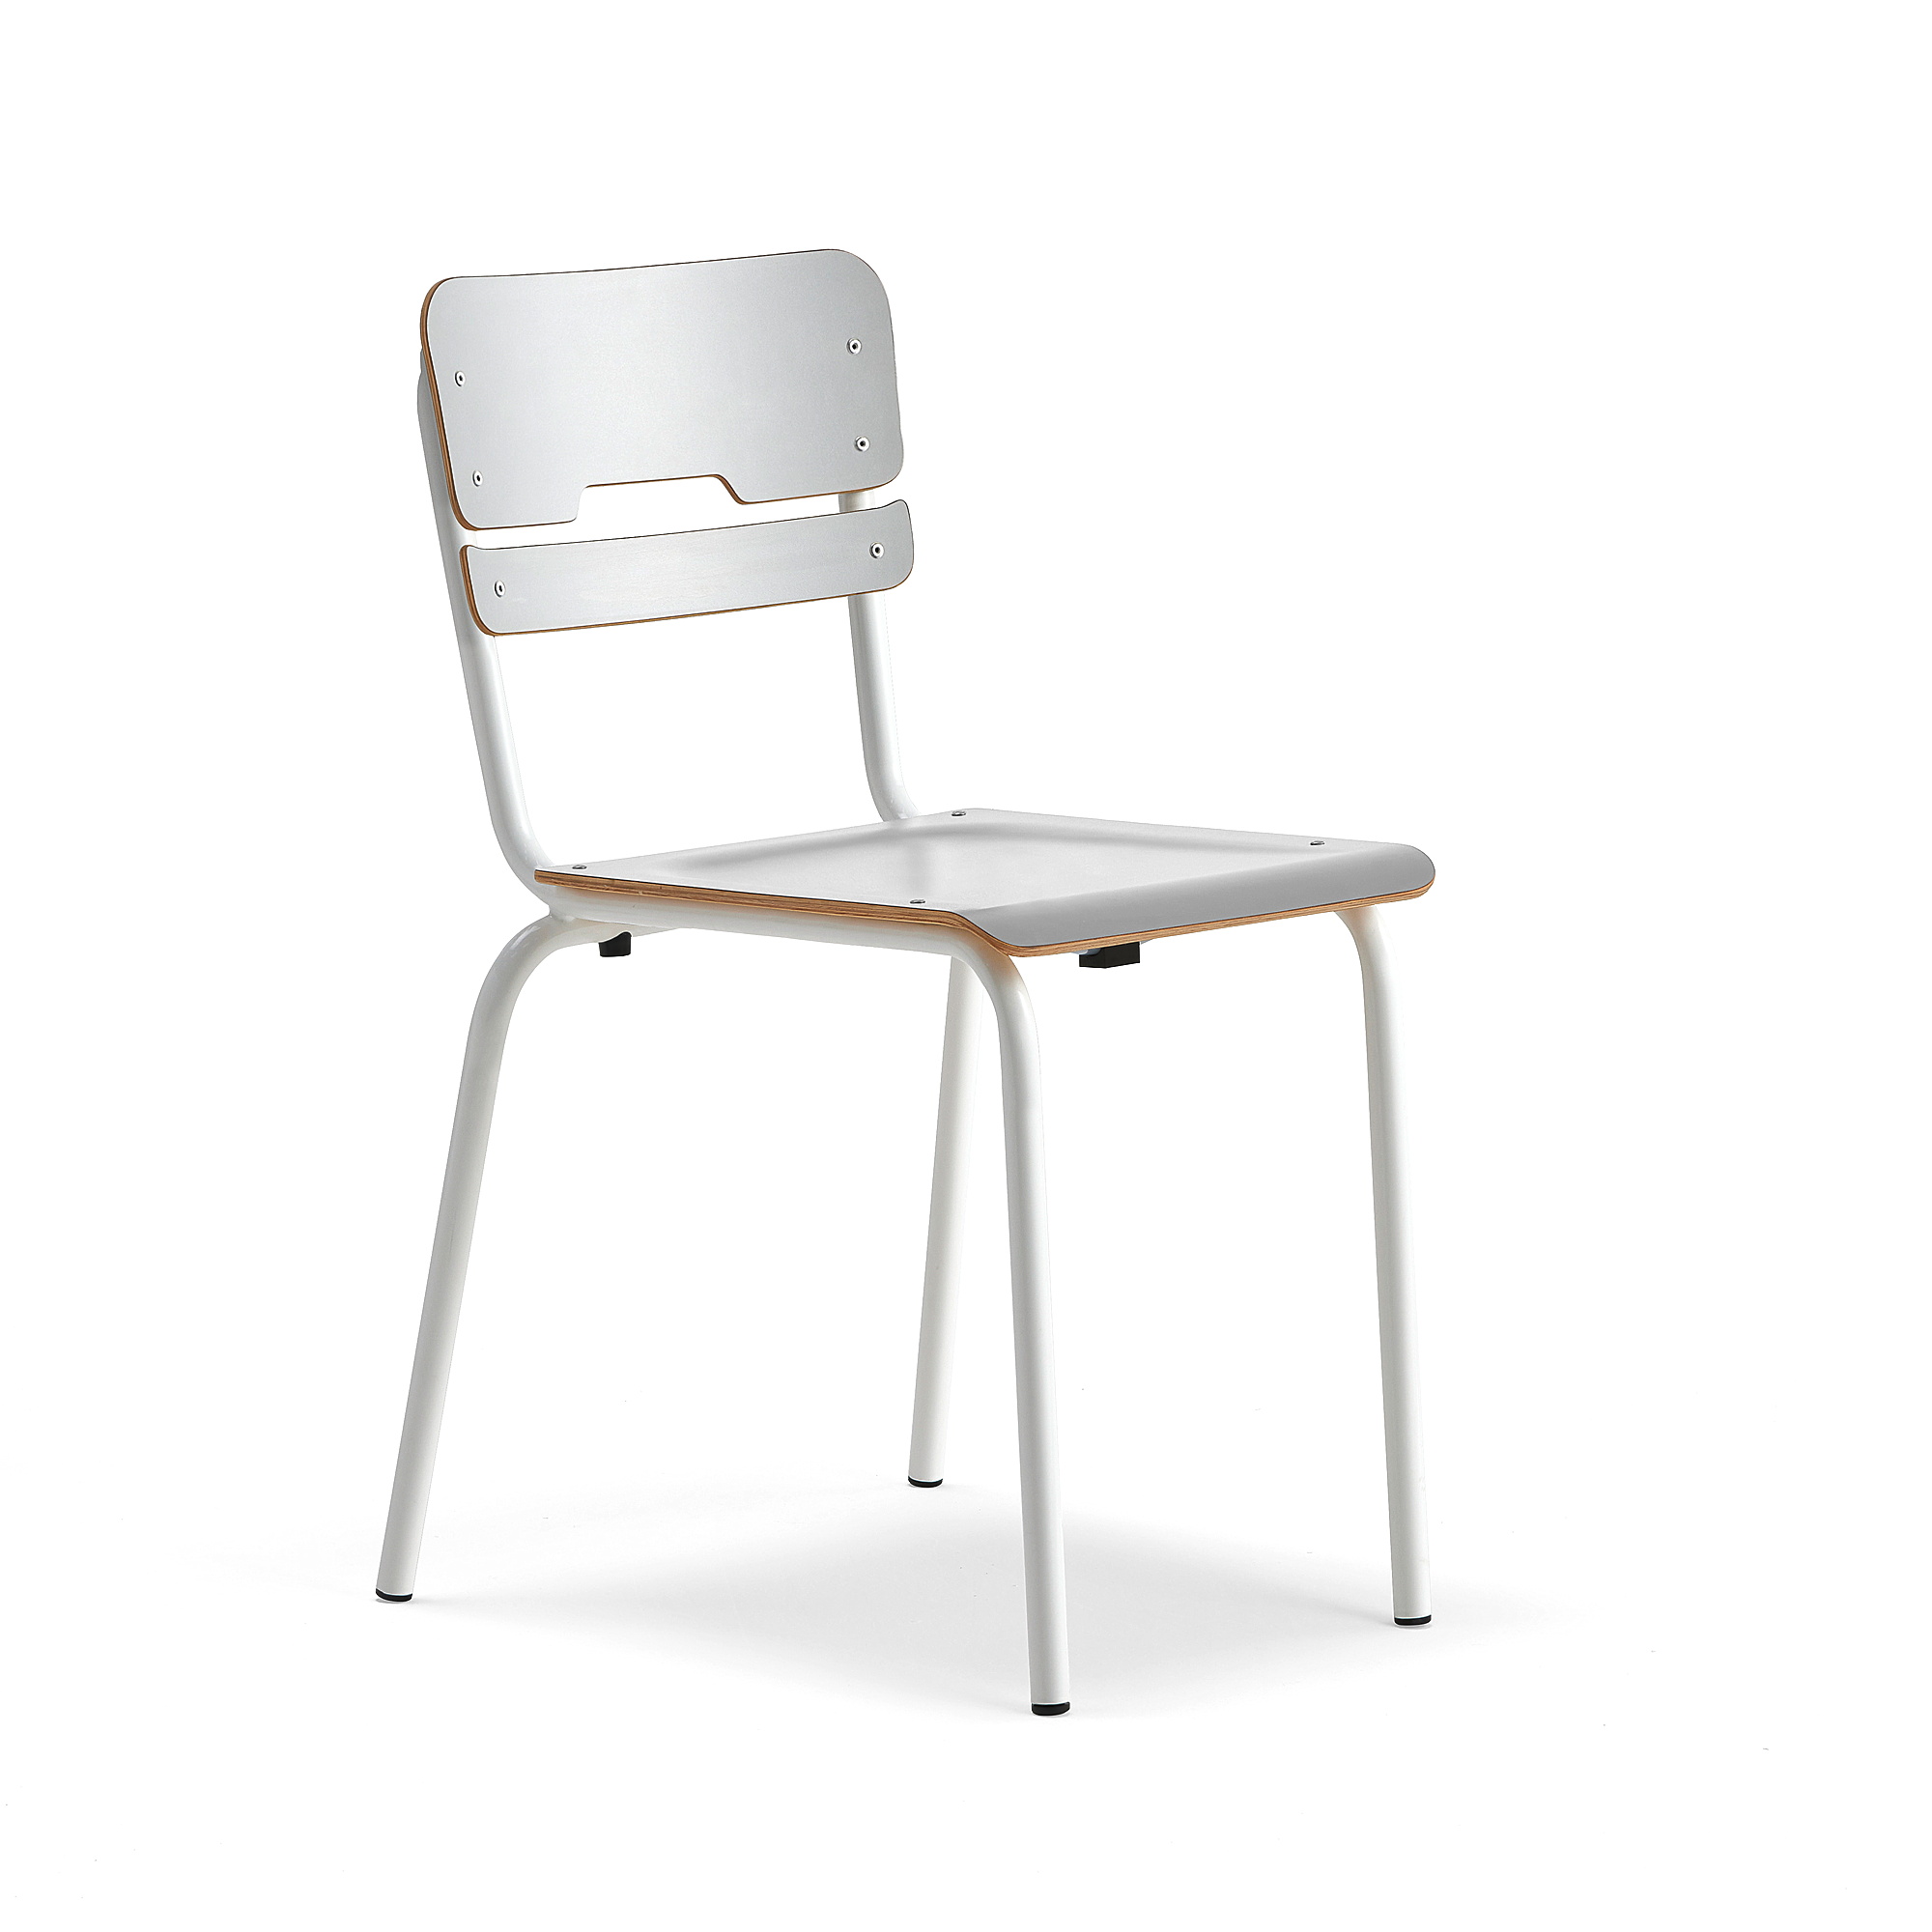 Školní židle SCIENTIA, sedák 390x390 mm, výška 460 mm, bílá/šedá